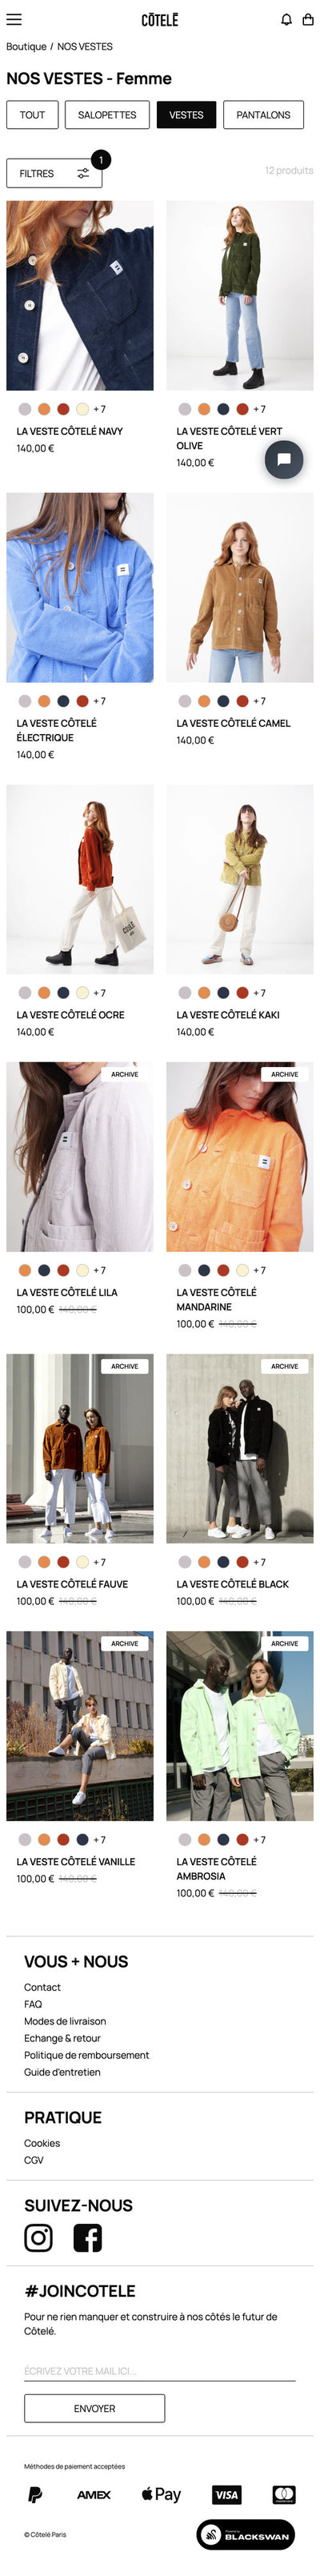 Cotele Paris - Page Collection - Mobile